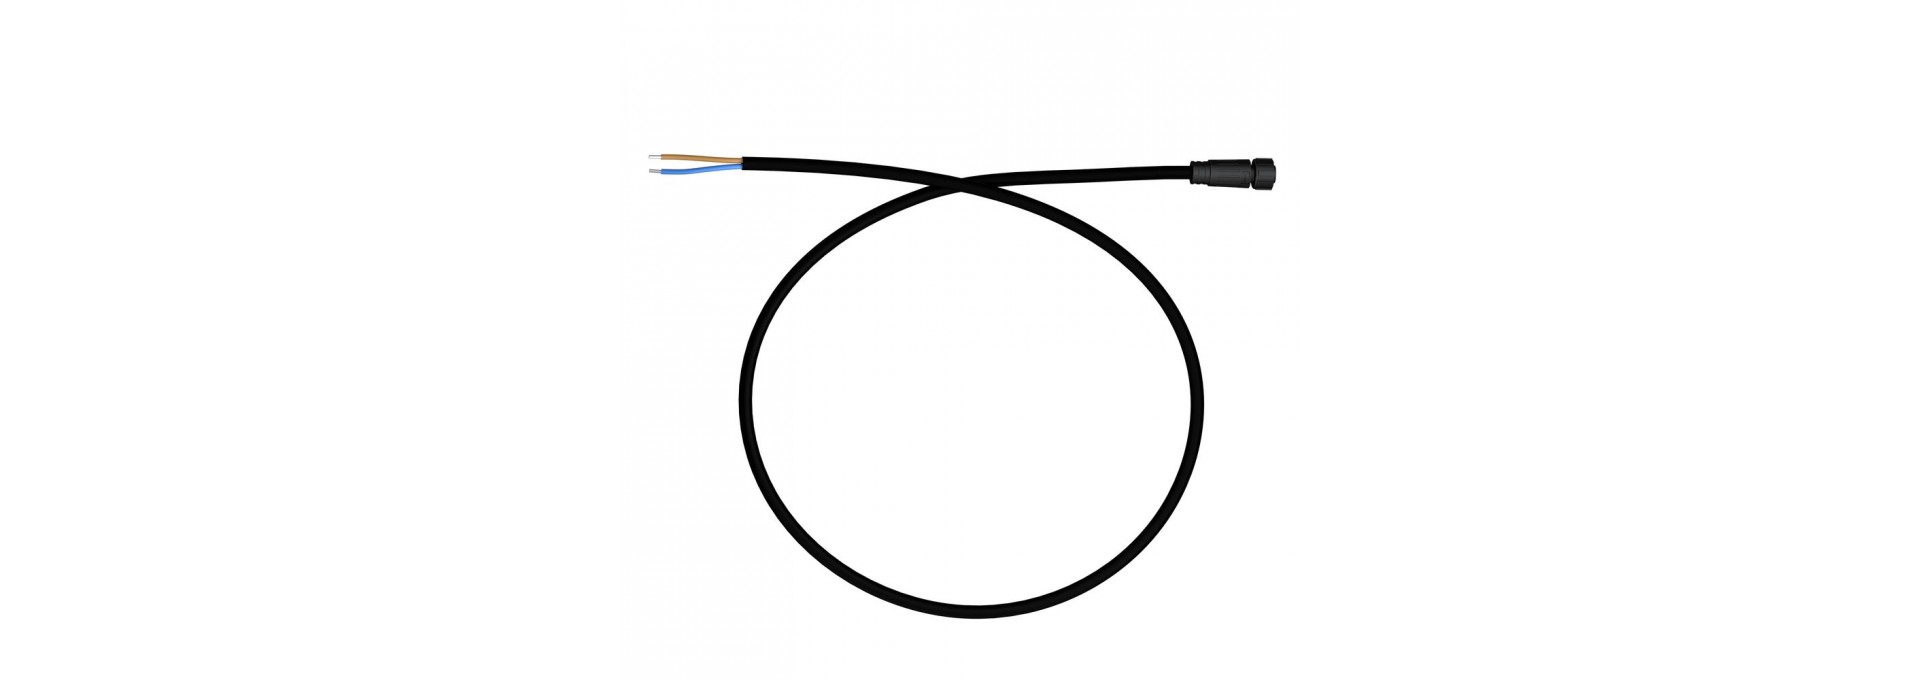 Вводной кабель с разъемом питания. M12, 24-48В, 1м